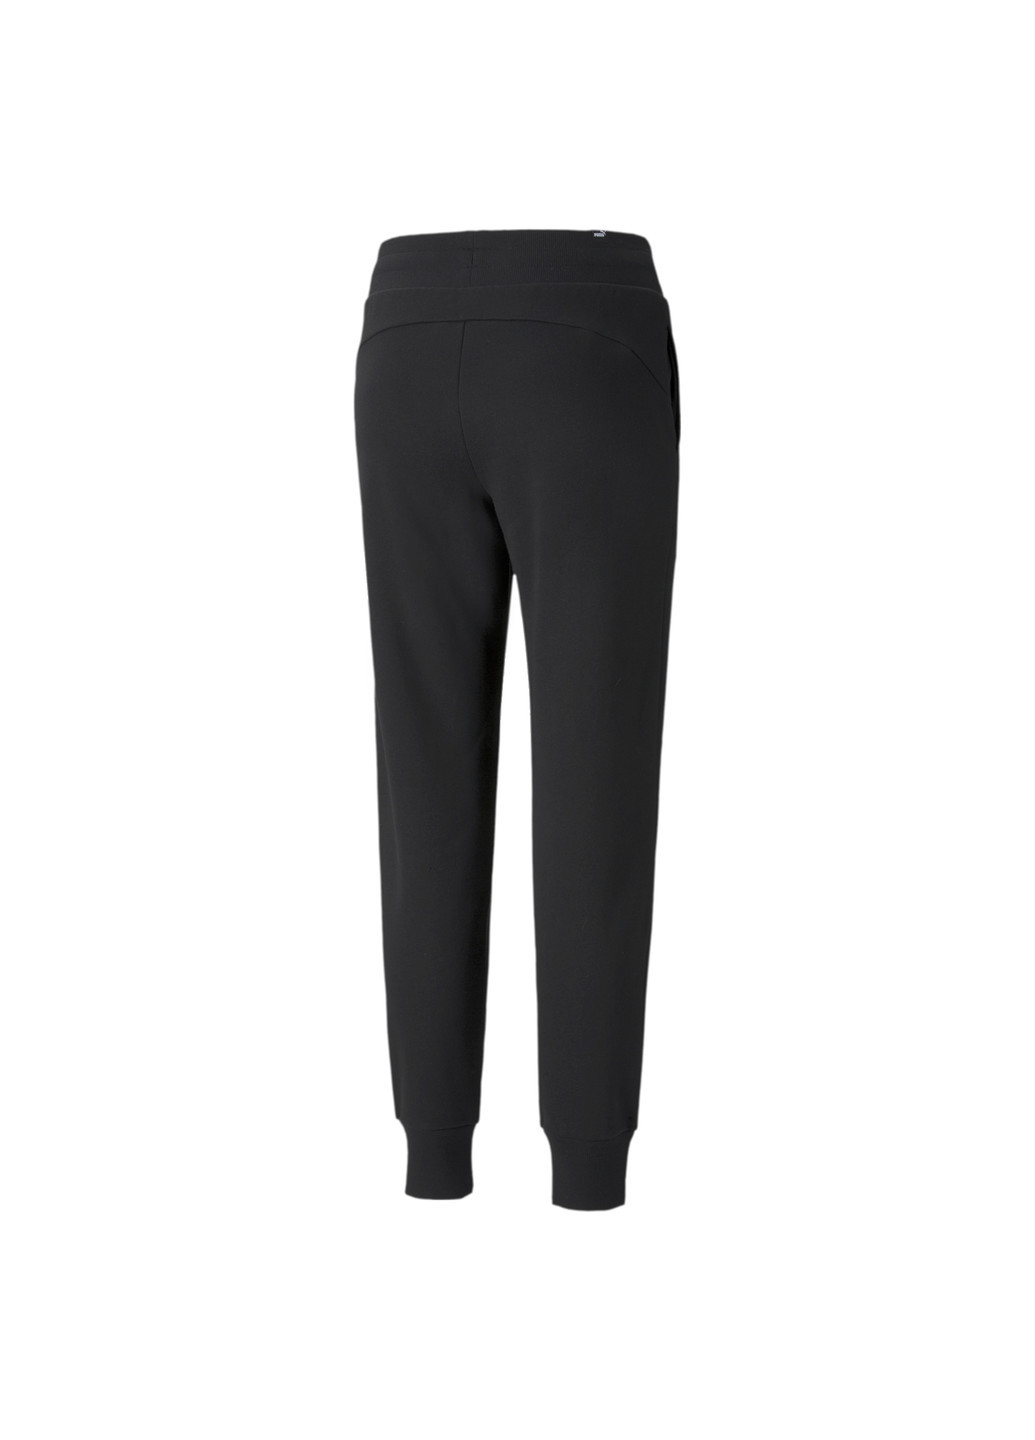 Черные демисезонные штаны essentials+ metallic fleece women's pants Puma